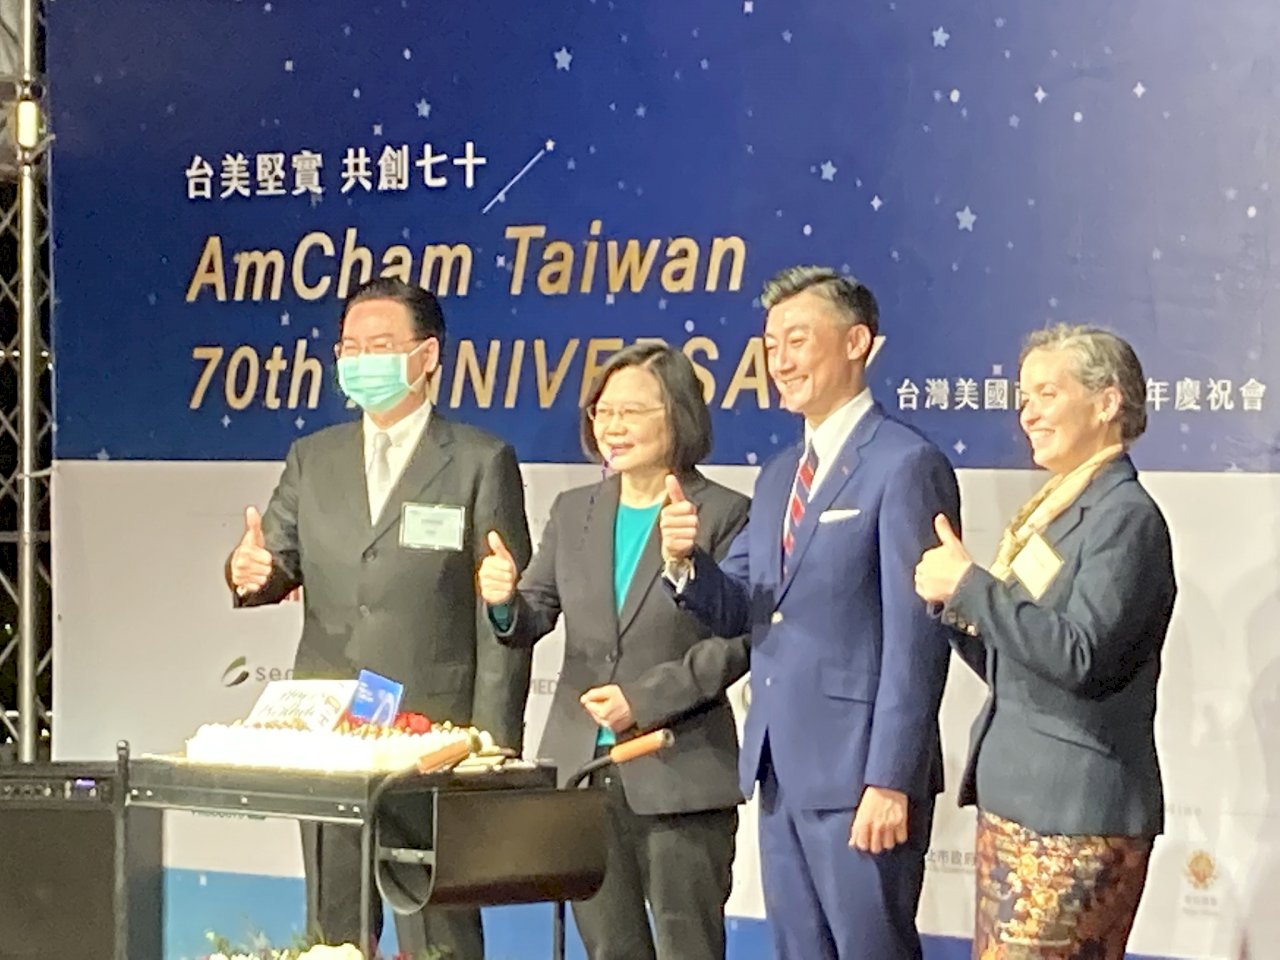 台灣美國商會歡慶70載 蔡總統盼下個70年仍為真朋友、好夥伴